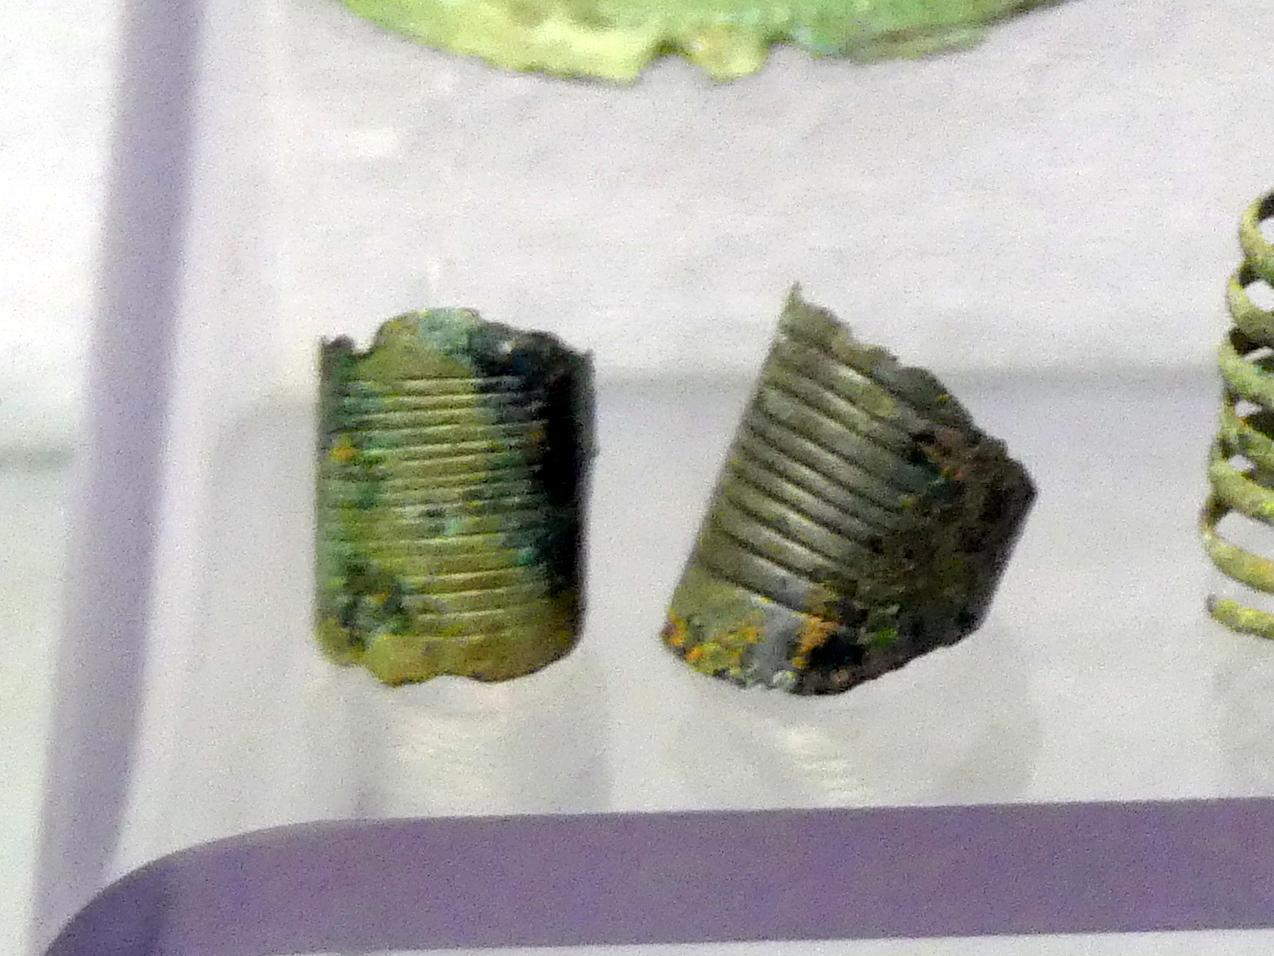 2 Bandringe, Mittlere Bronzezeit, 3000 - 1300 v. Chr., Bild 1/2